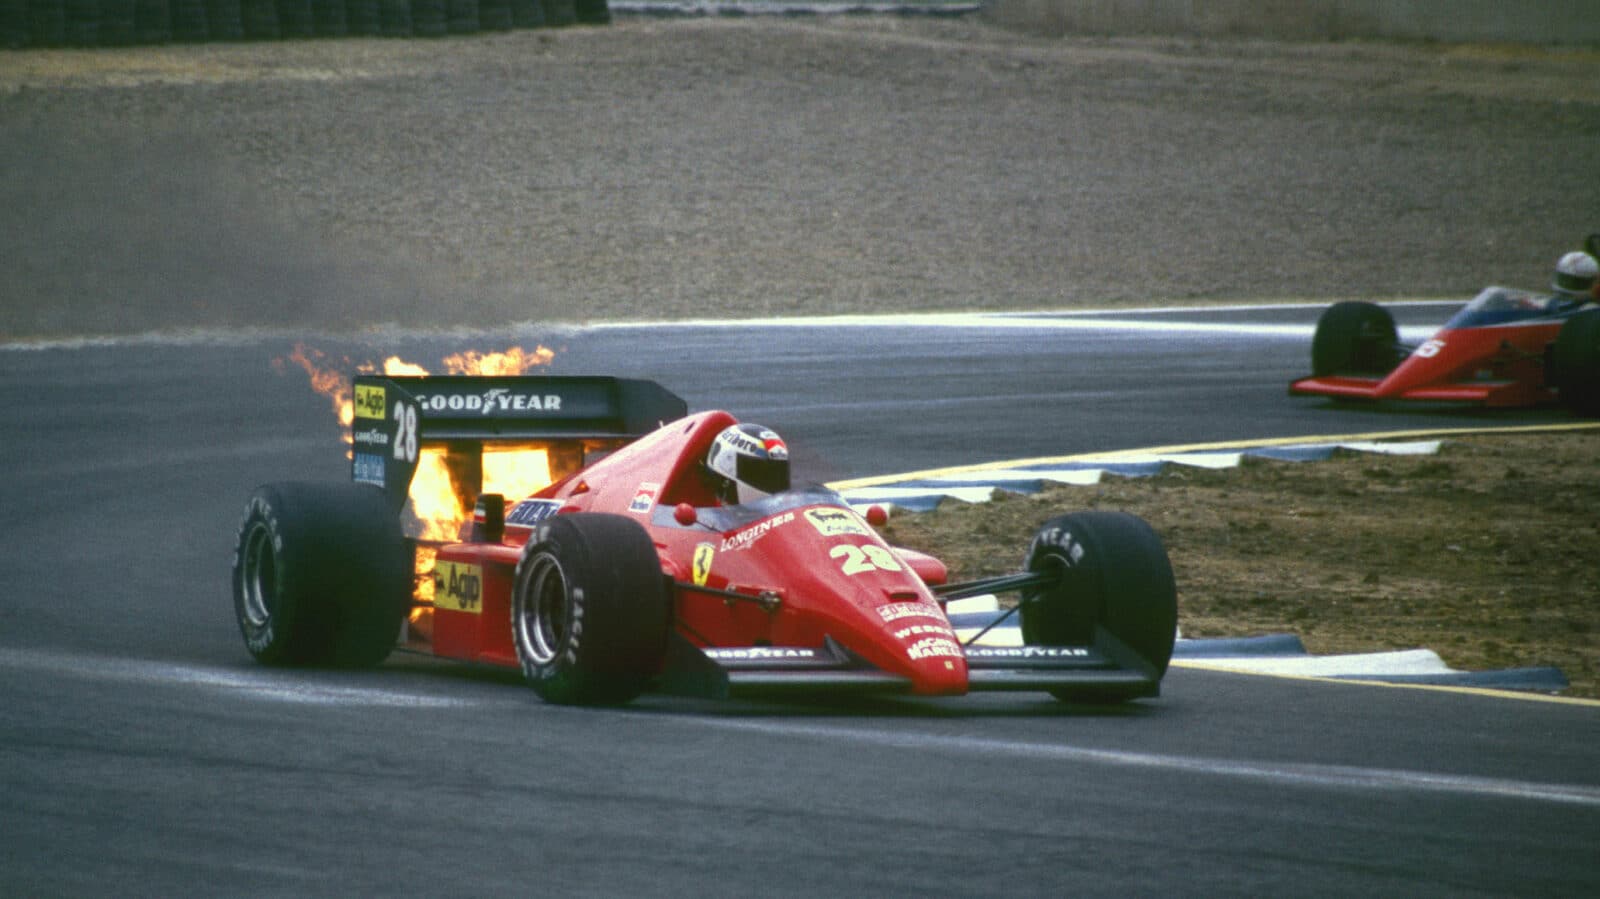 Ferrari F186 of Stefan Johansson on fire in 1986